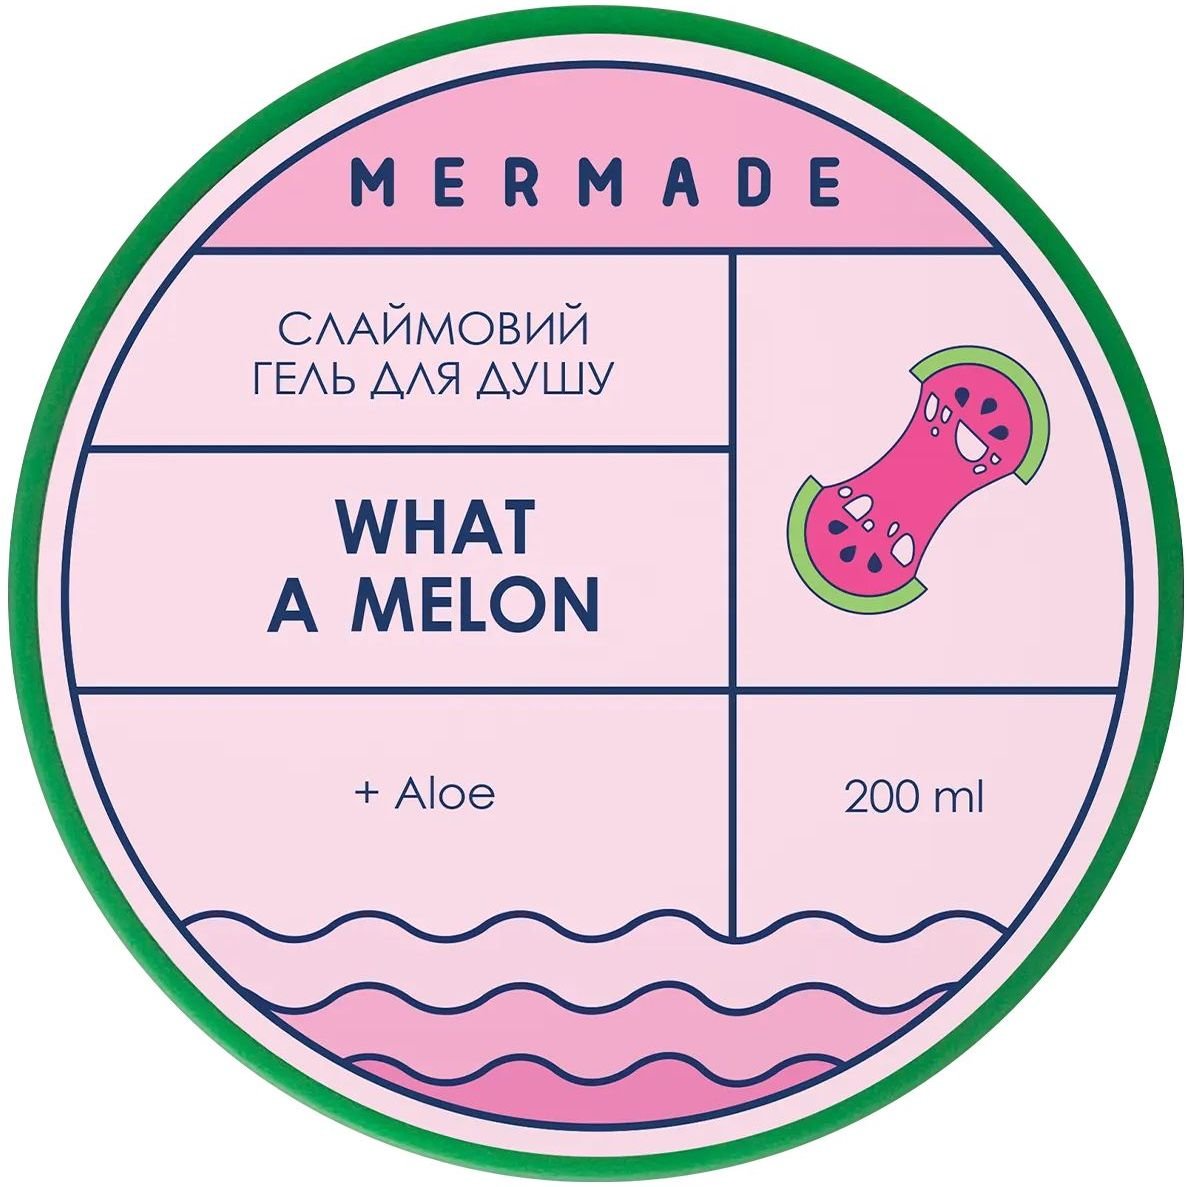 Слайм гель для душа Mermade What a Melon, 200 г - фото 4